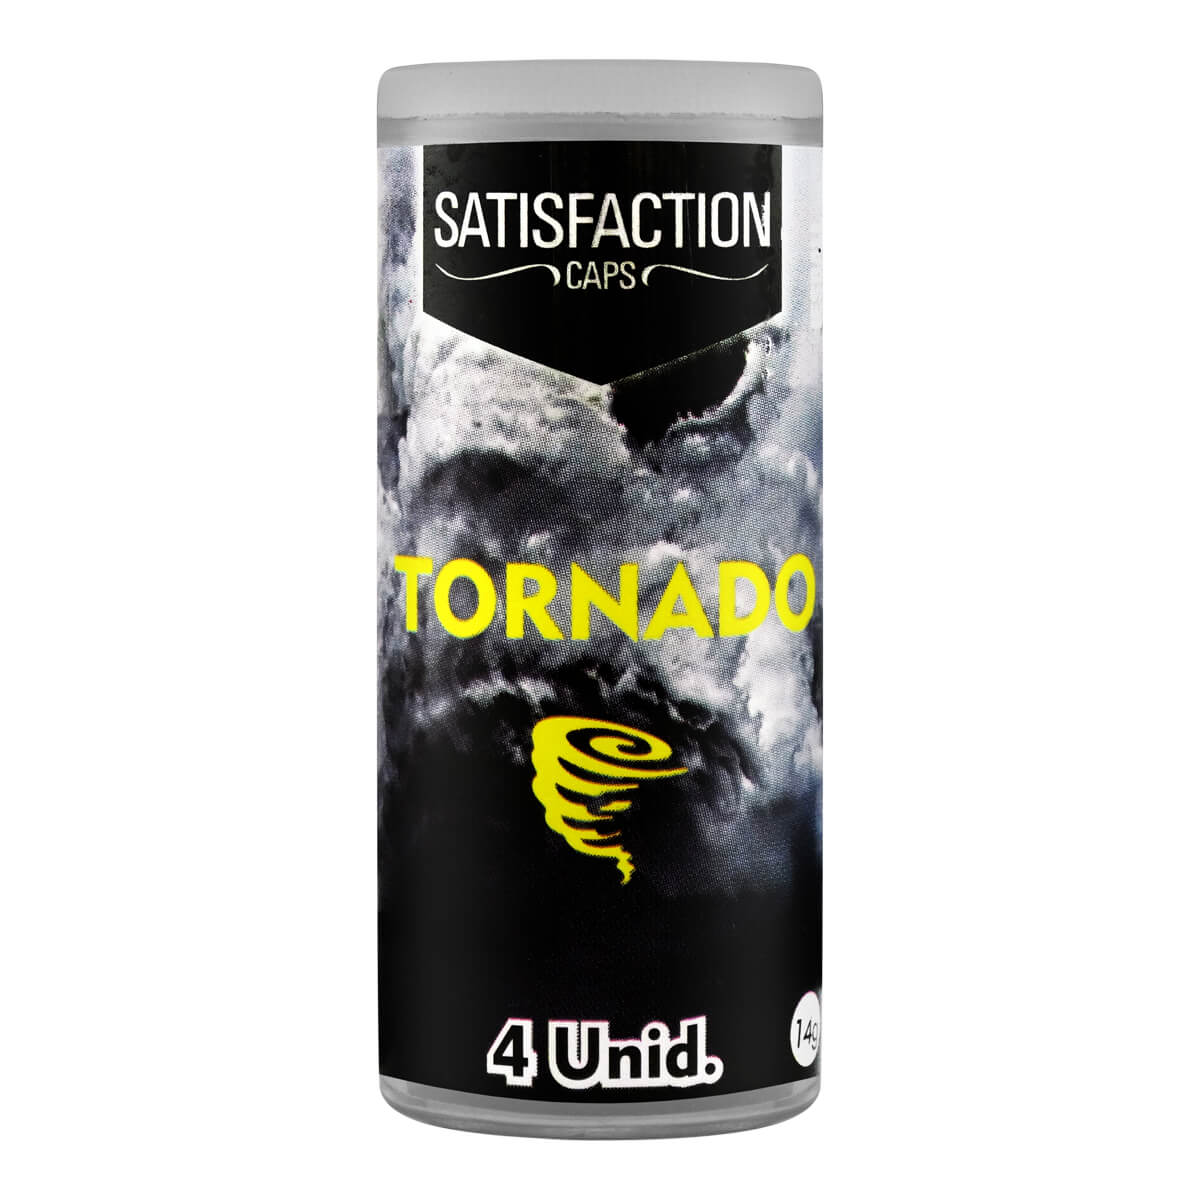 Iesball Bolinha Tornado para Massagem Corporal Satisfaction Caps